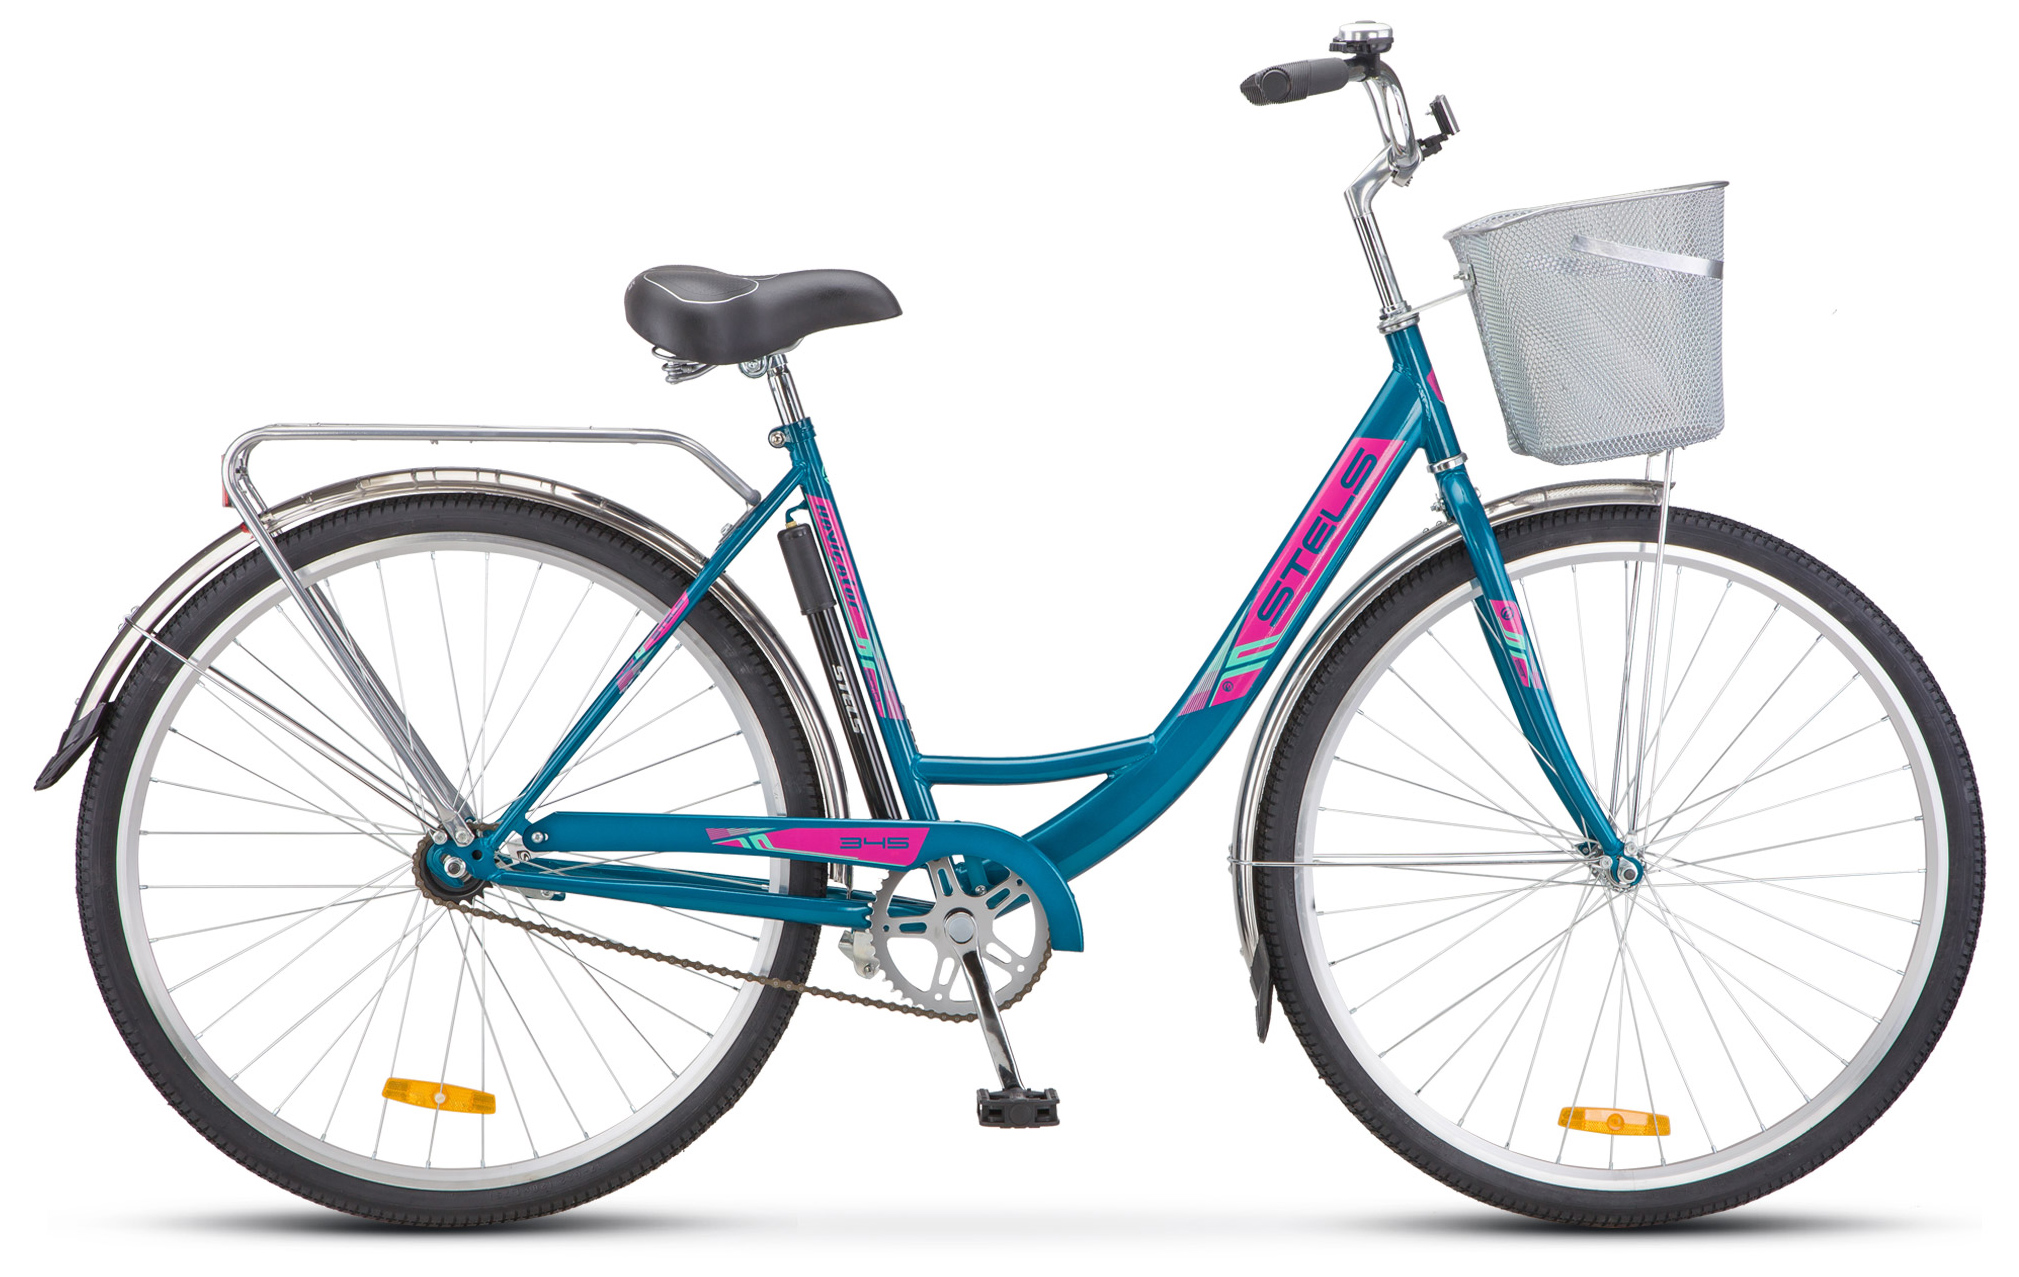  Отзывы о Женском велосипеде Stels Navigator 345 28 (Z010) 2019